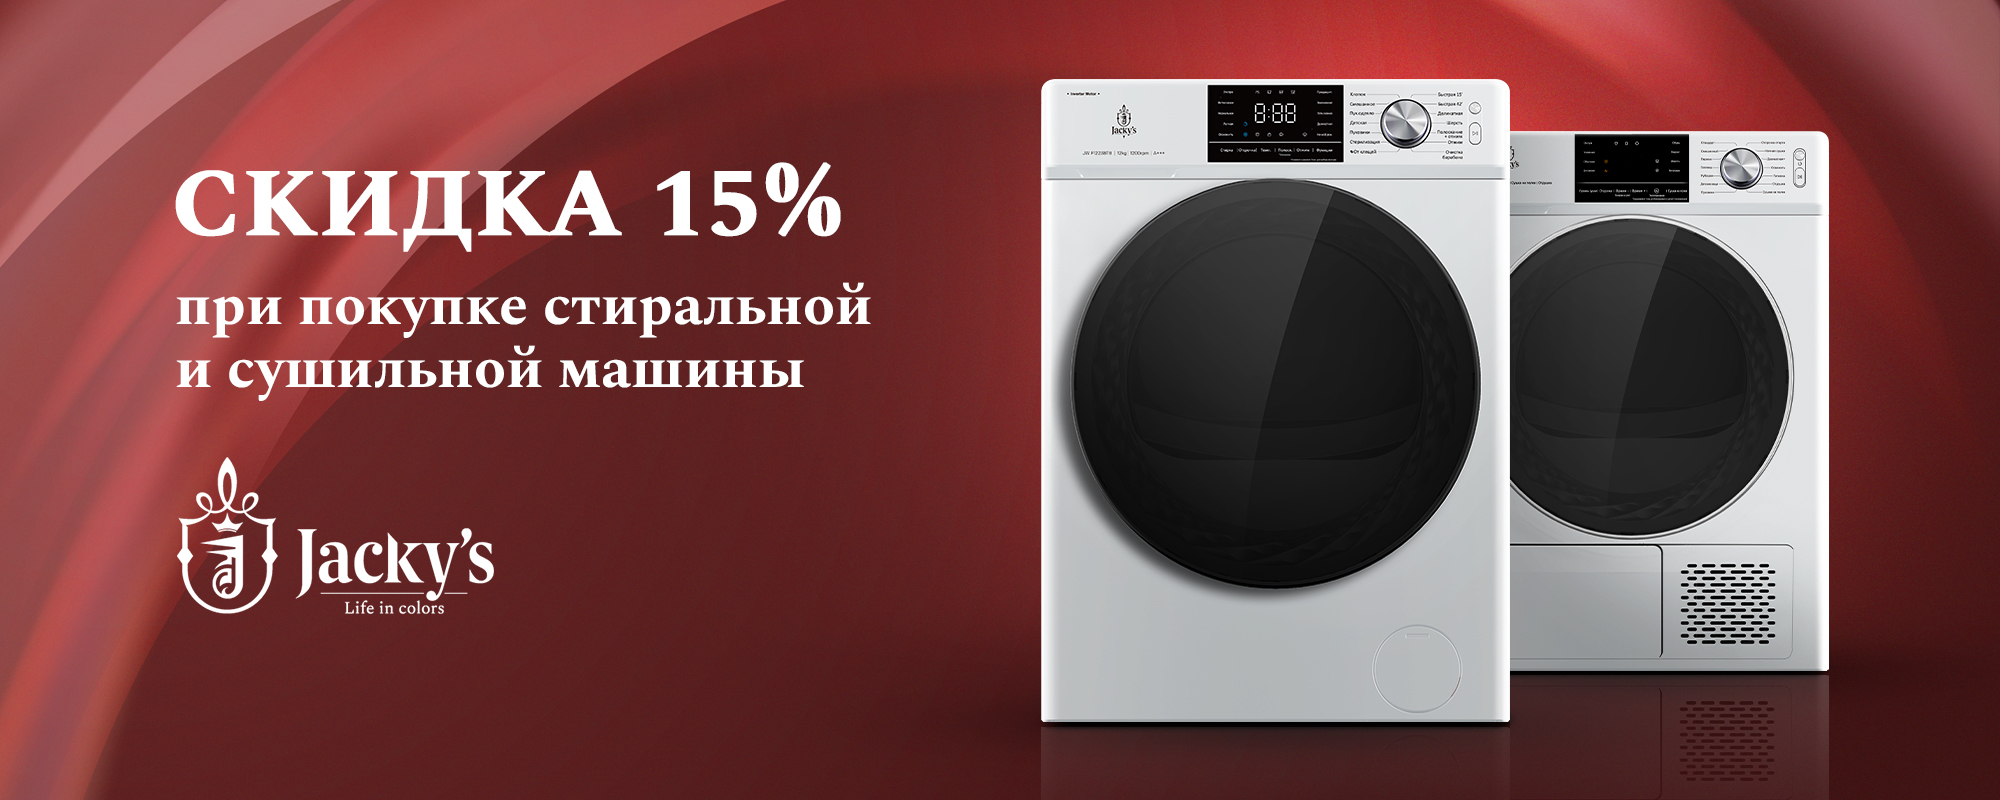 Акция Jacky's "Скидка 15% при покупке стиральной и сушильной машины" до 30.06.24